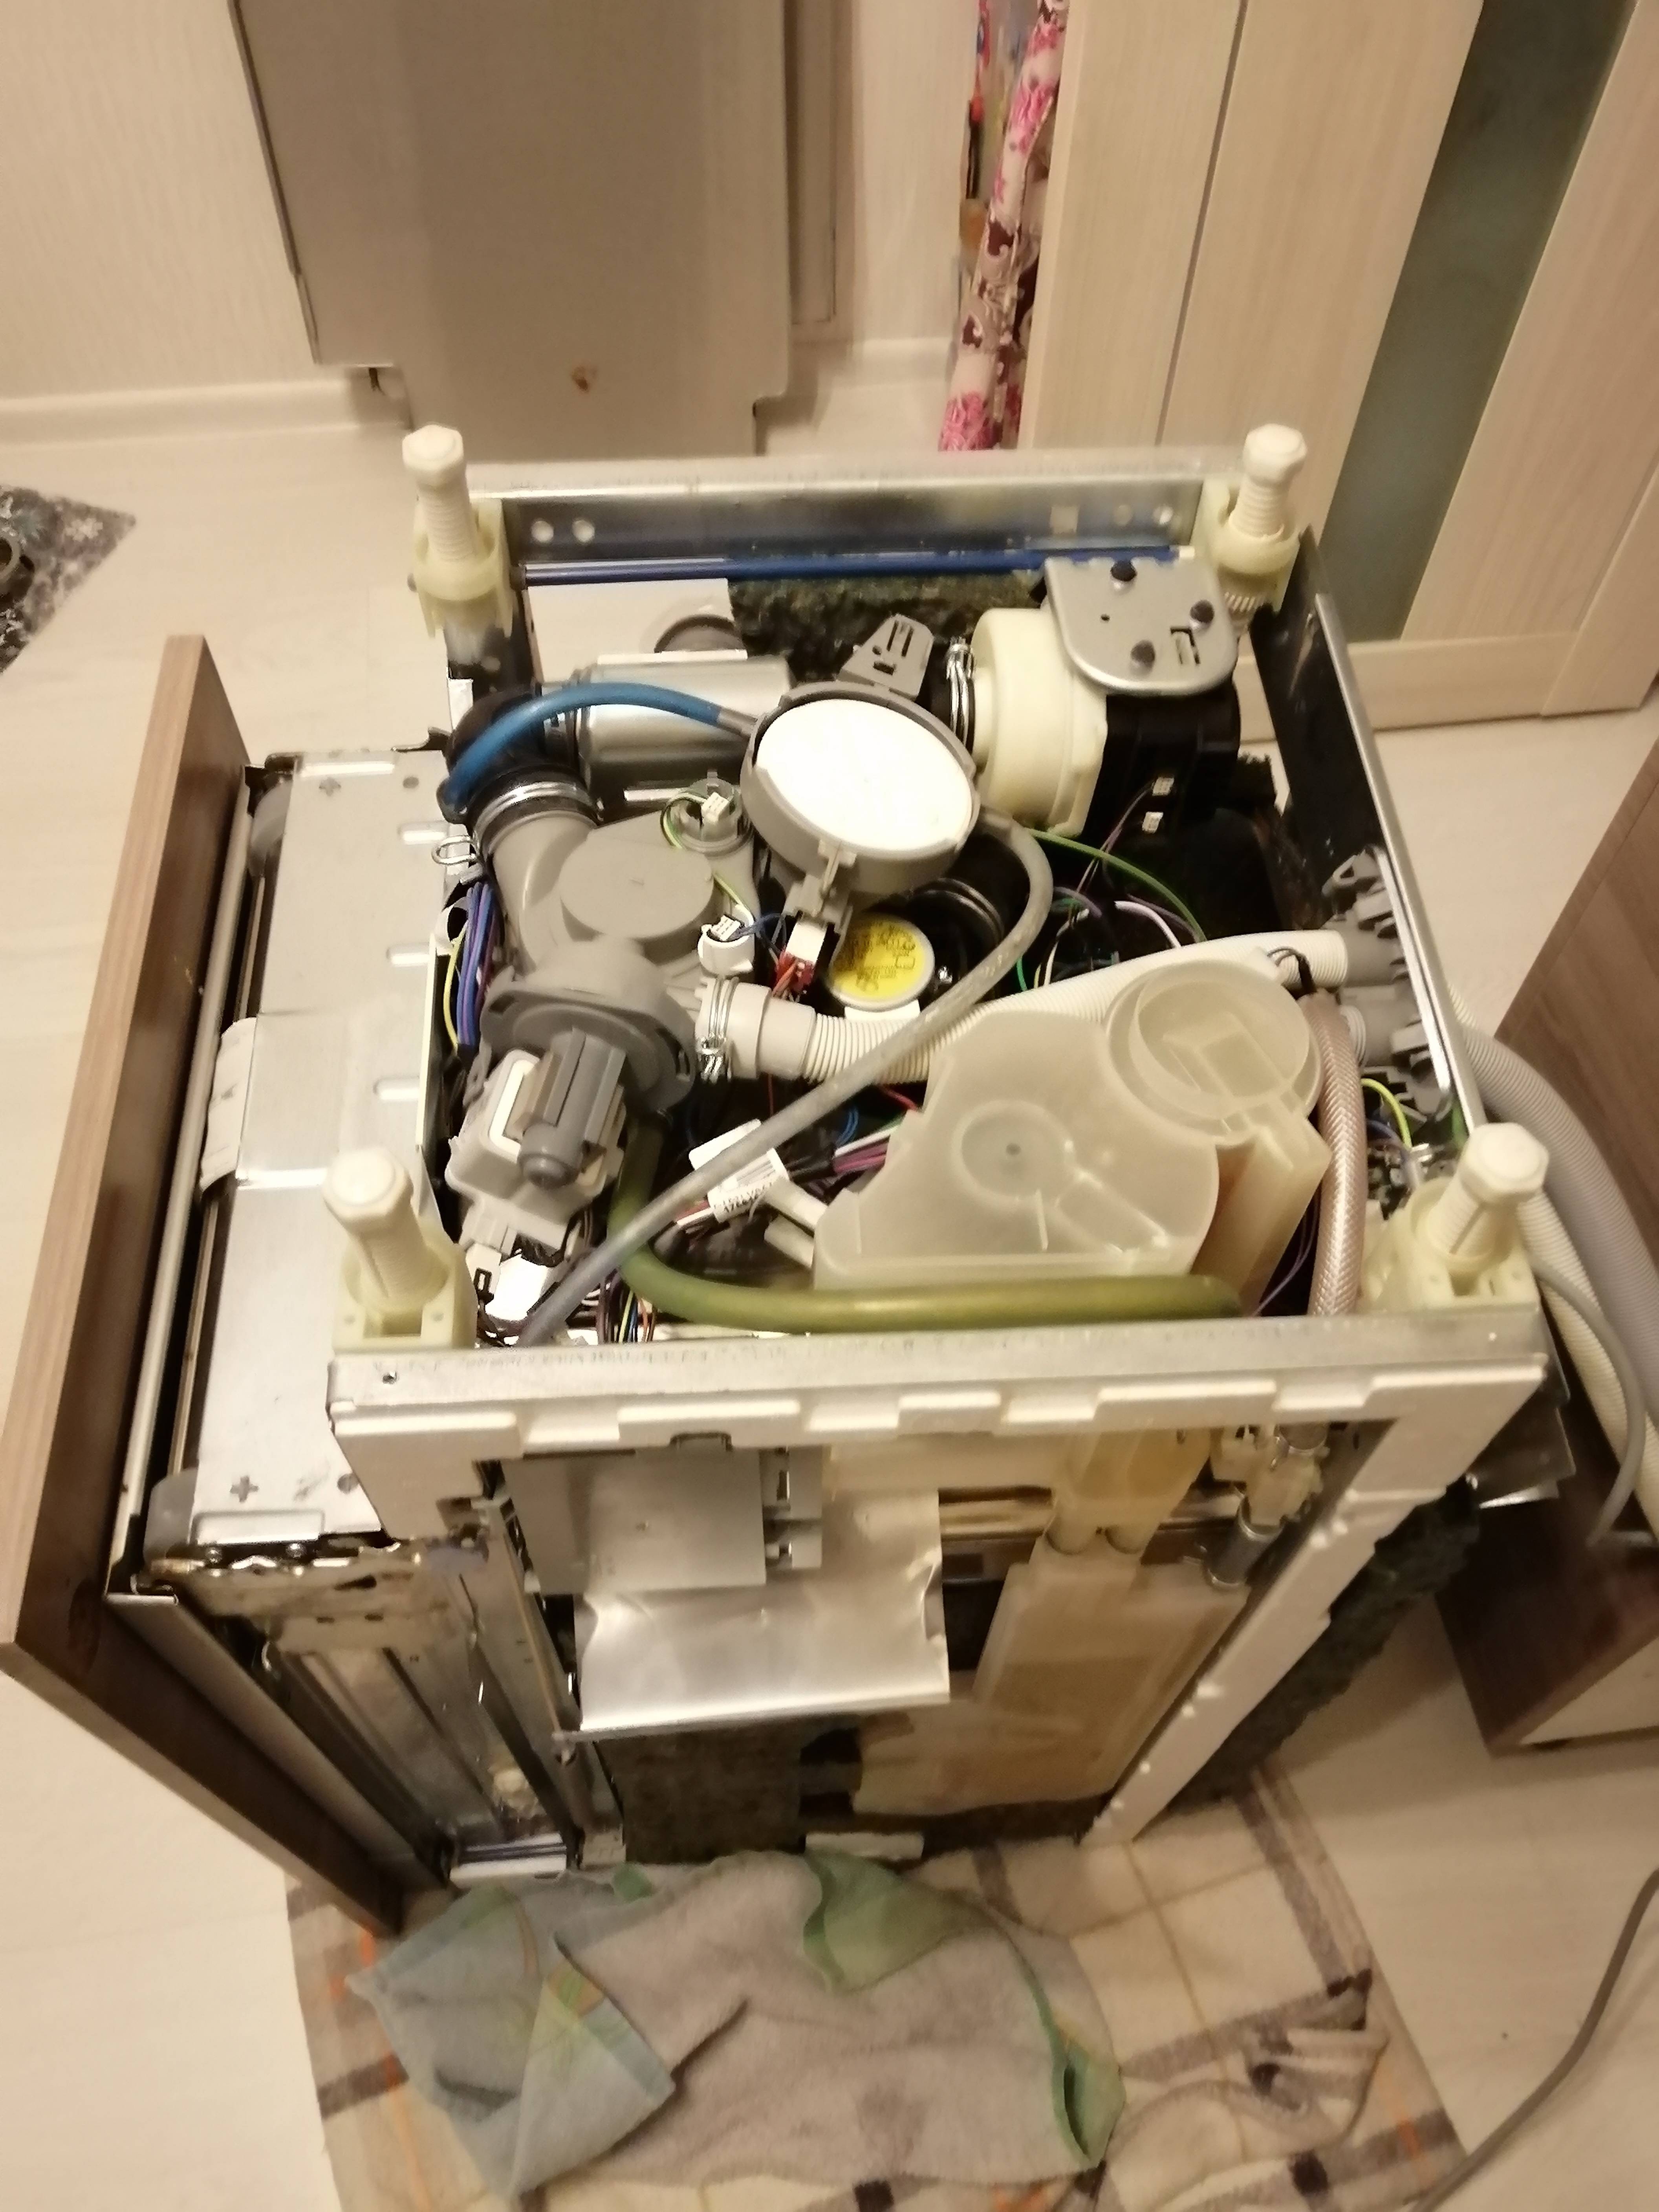 Сломалась посудомойка – можно ли починить самостоятельно?